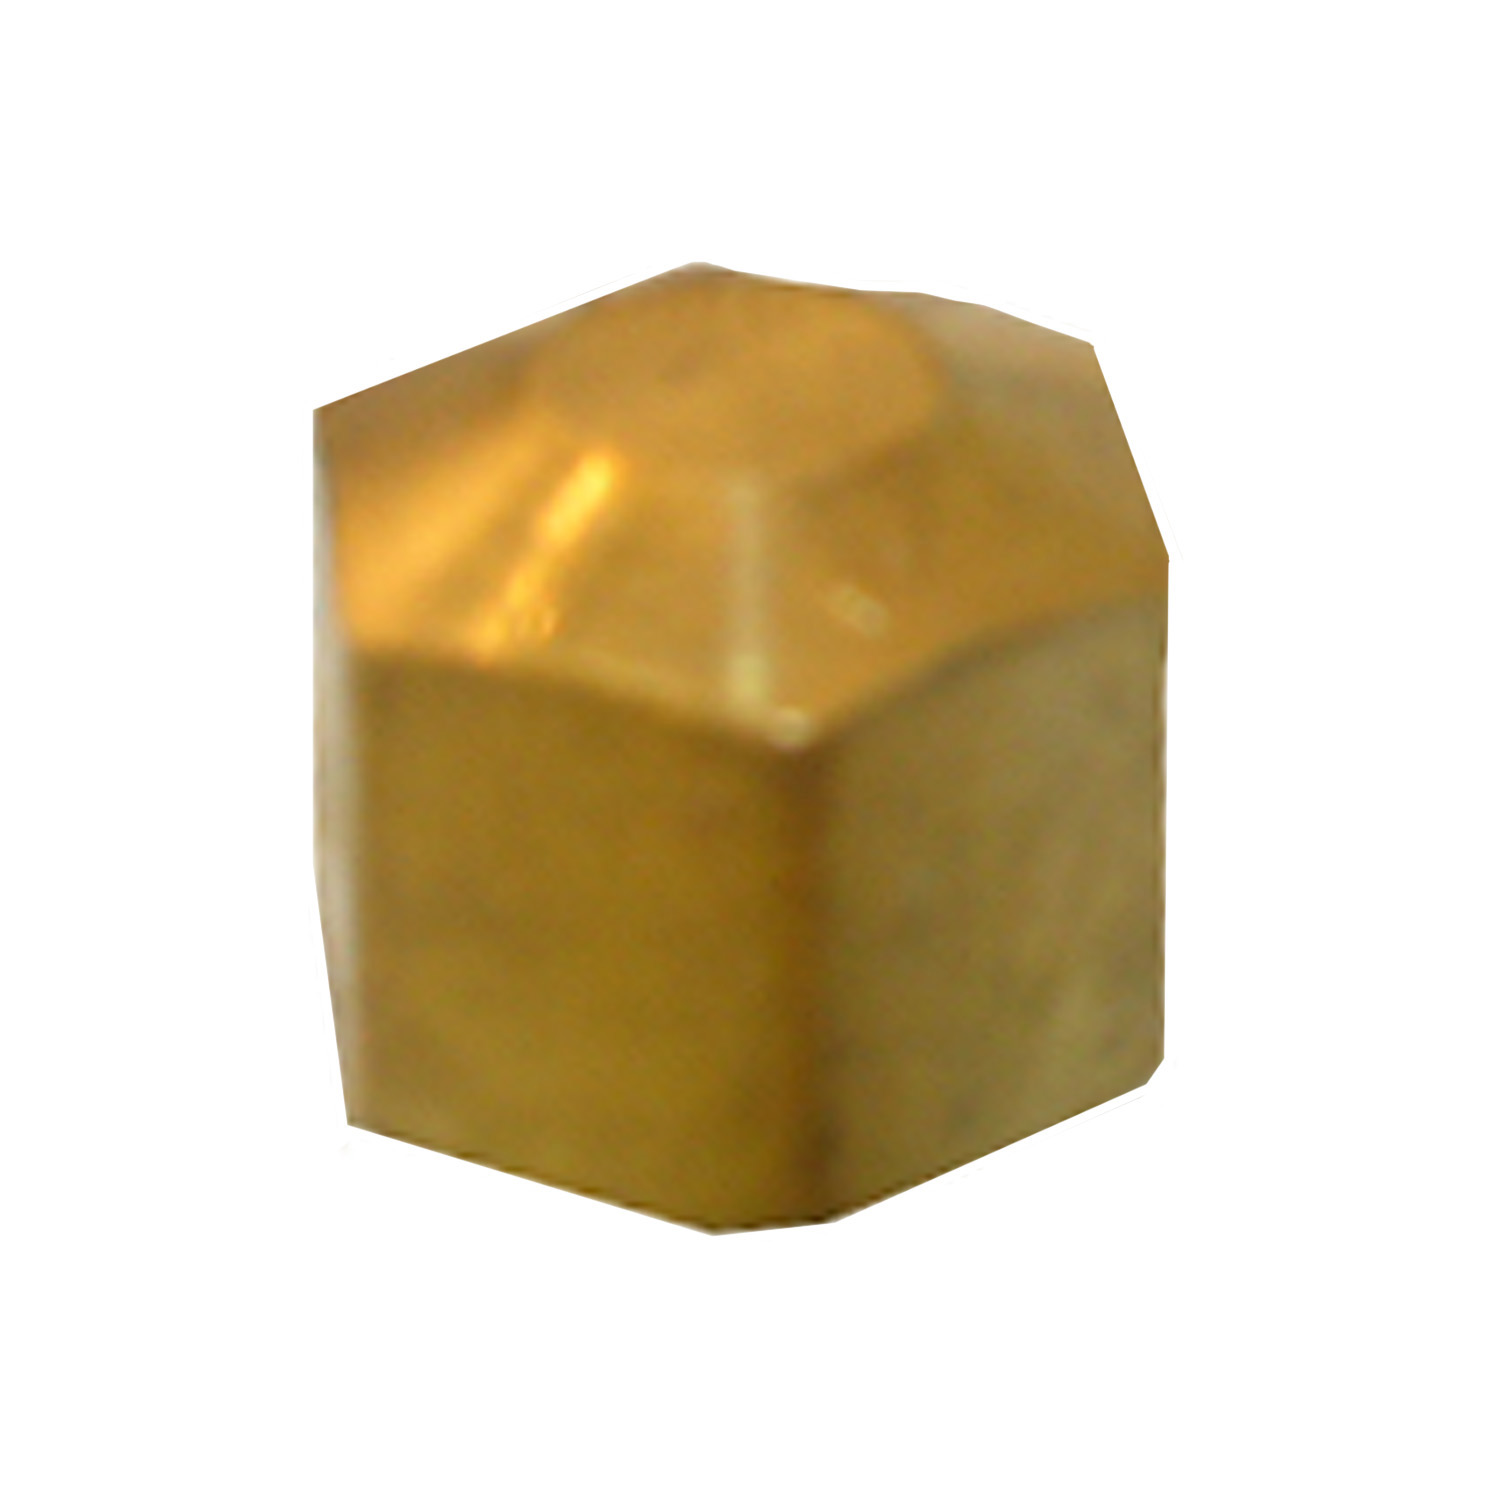 17-6181 Pipe Cap, 1/4 in, Compression, Brass, 300 psi Pressure